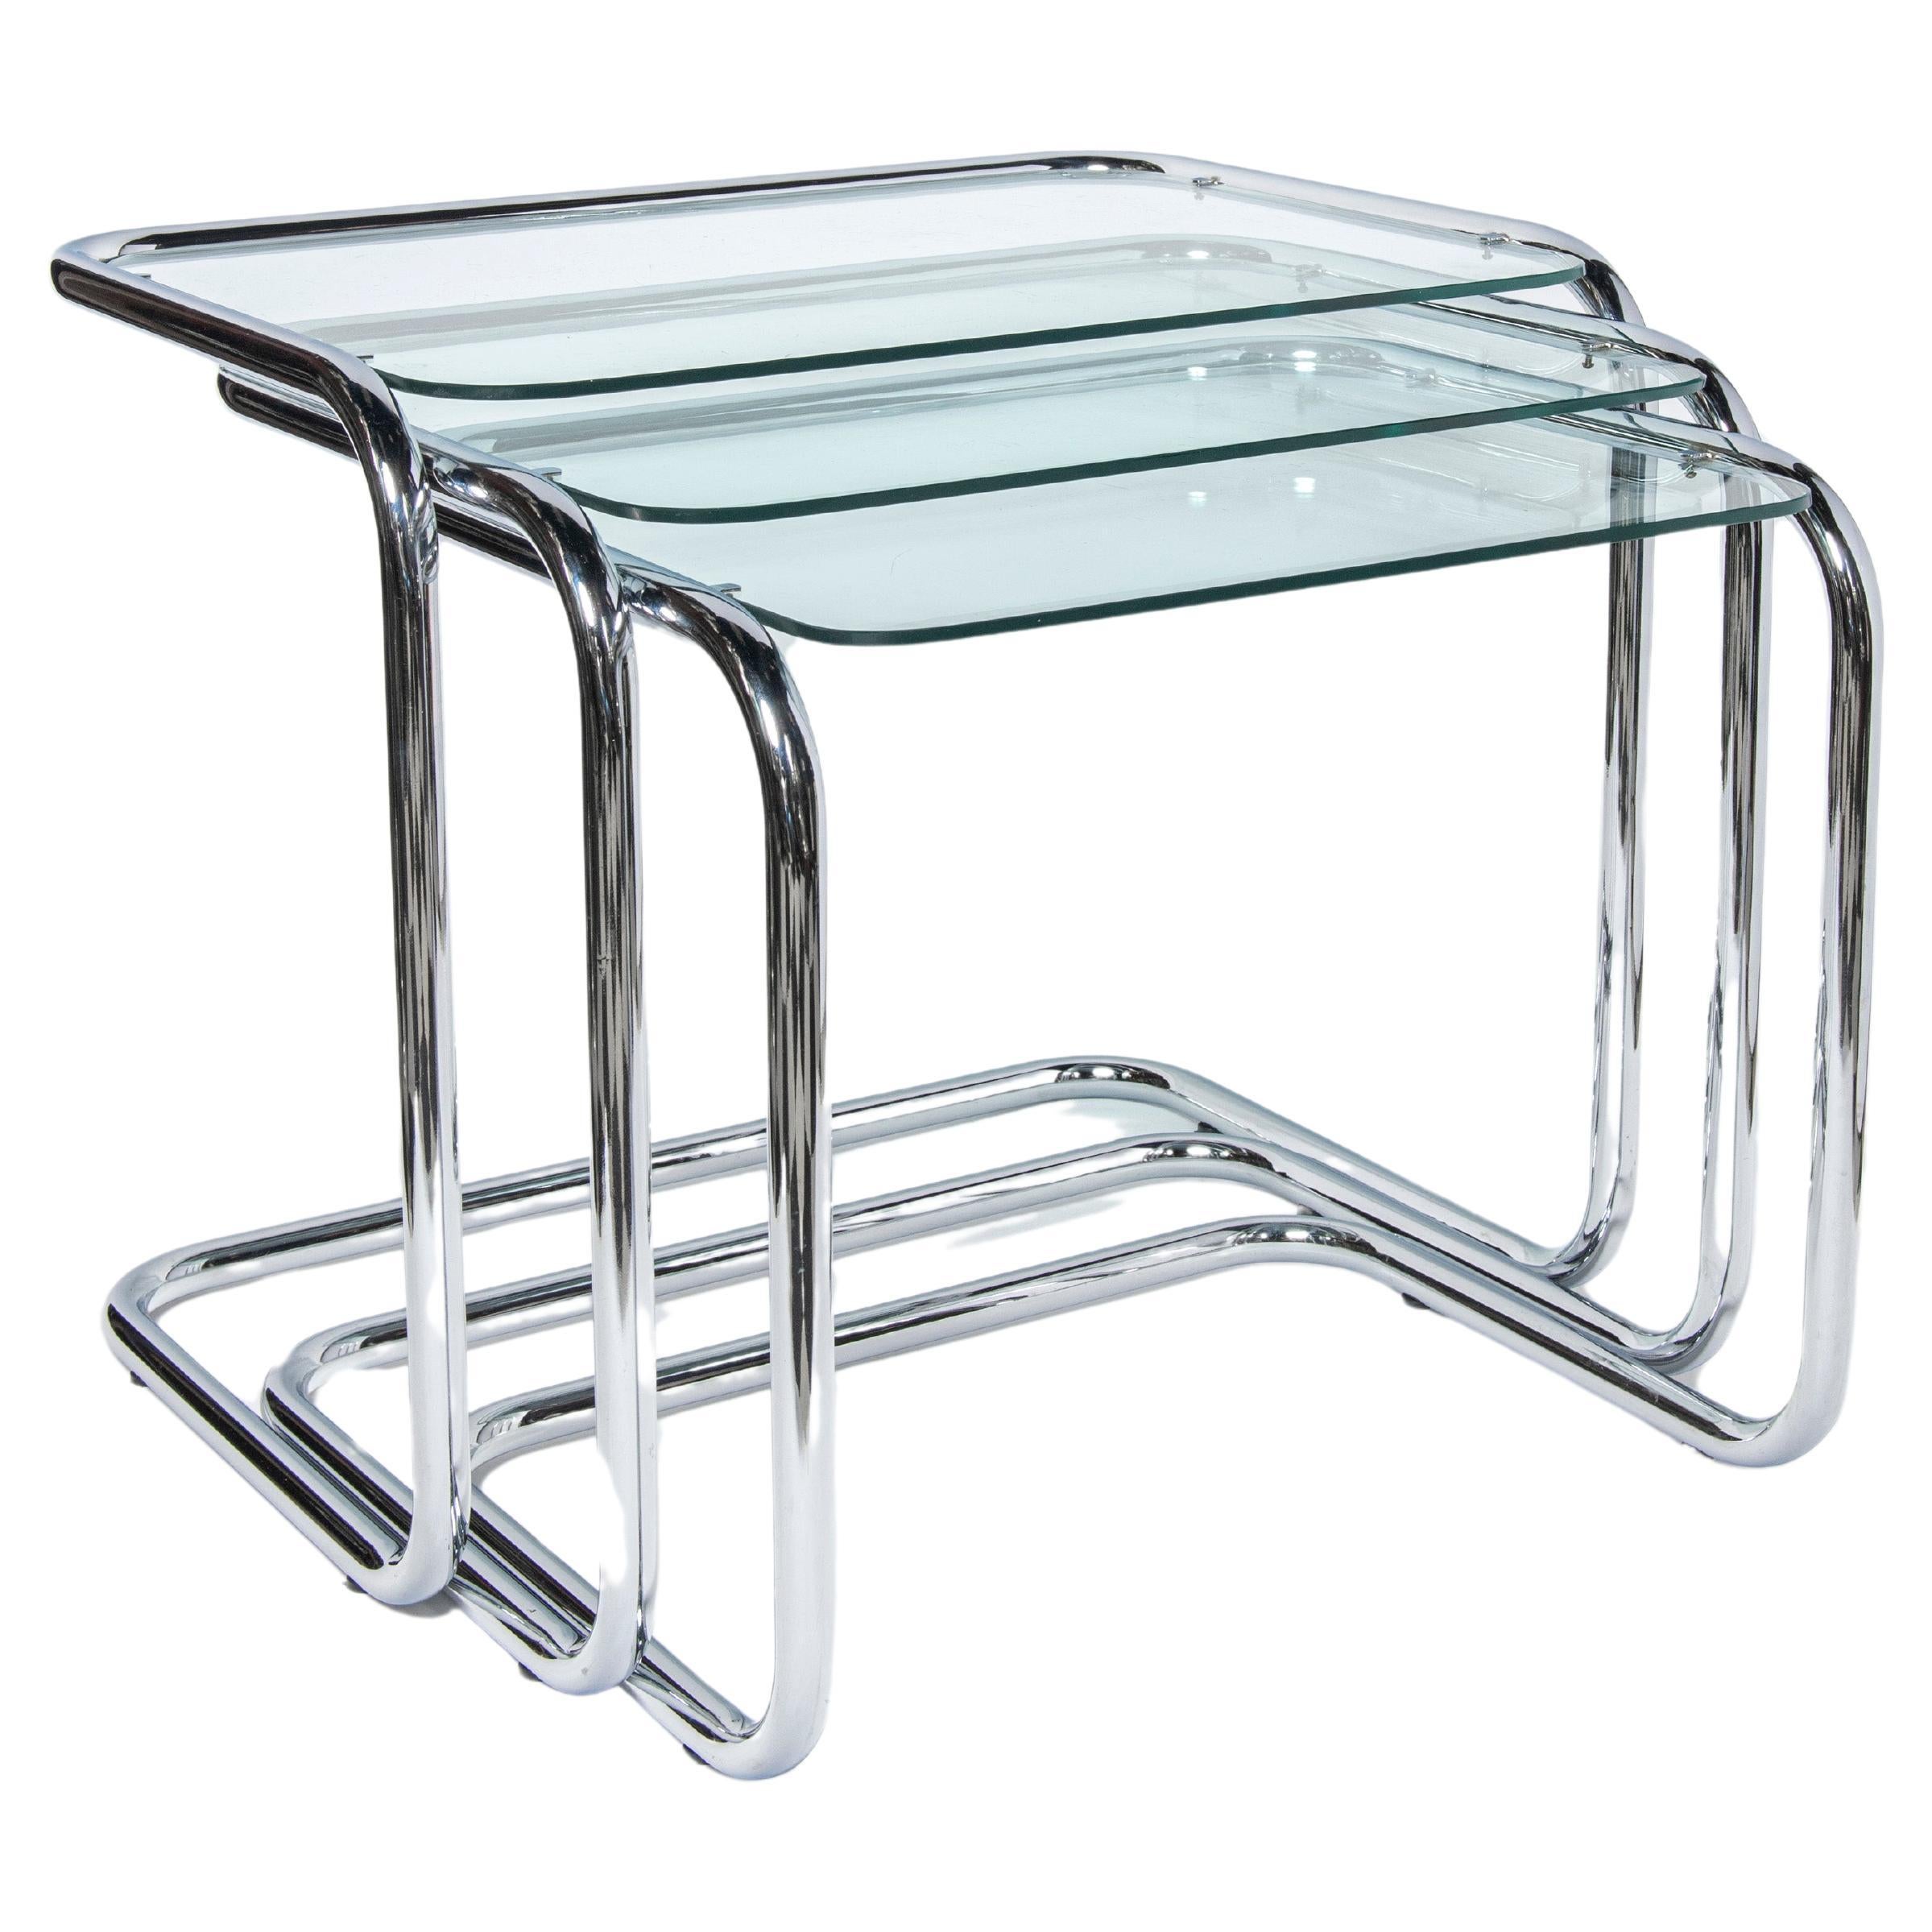 Chrome and glass nest tables Designed by Reinaldo Leiro and Arnoldo Gaite, 1970. For Sale